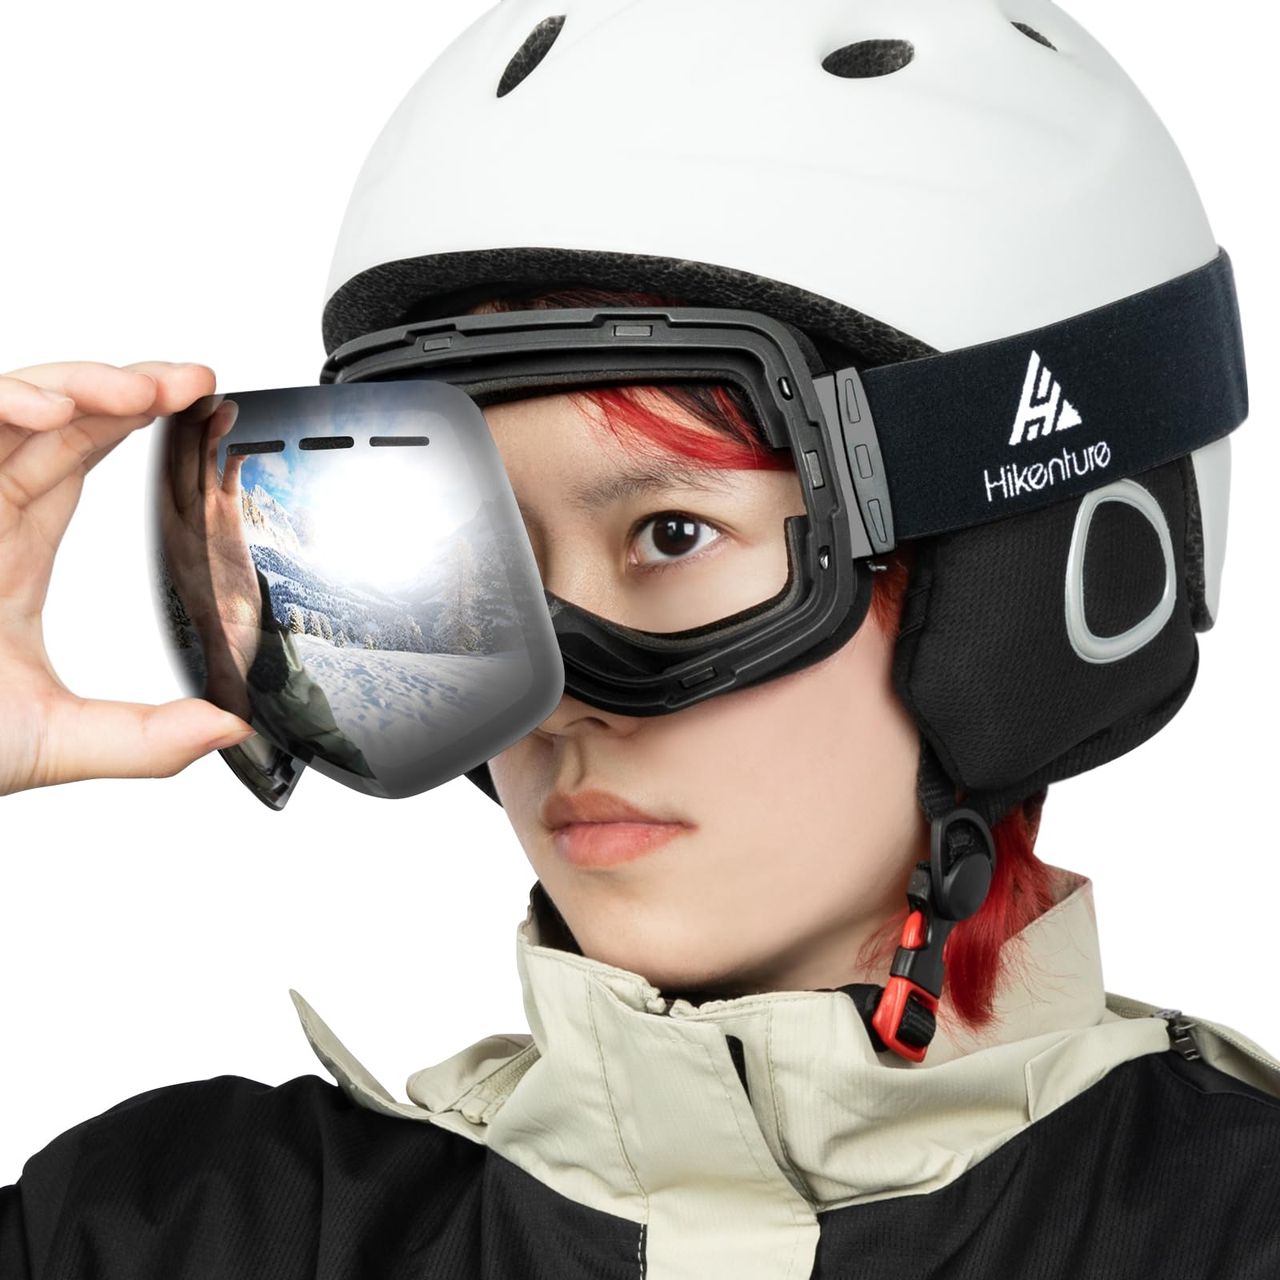 [HIKENTURE] スキーゴーグル 球面レンズ スノーゴーグル スノーボードゴーグル ヘルメット対応 OTG 広視野 防風/防雪/曇り止め 紫外線防止 軽量 耐衝撃 替えレンズ対応可 黒枠・ブラック(VLT15%)